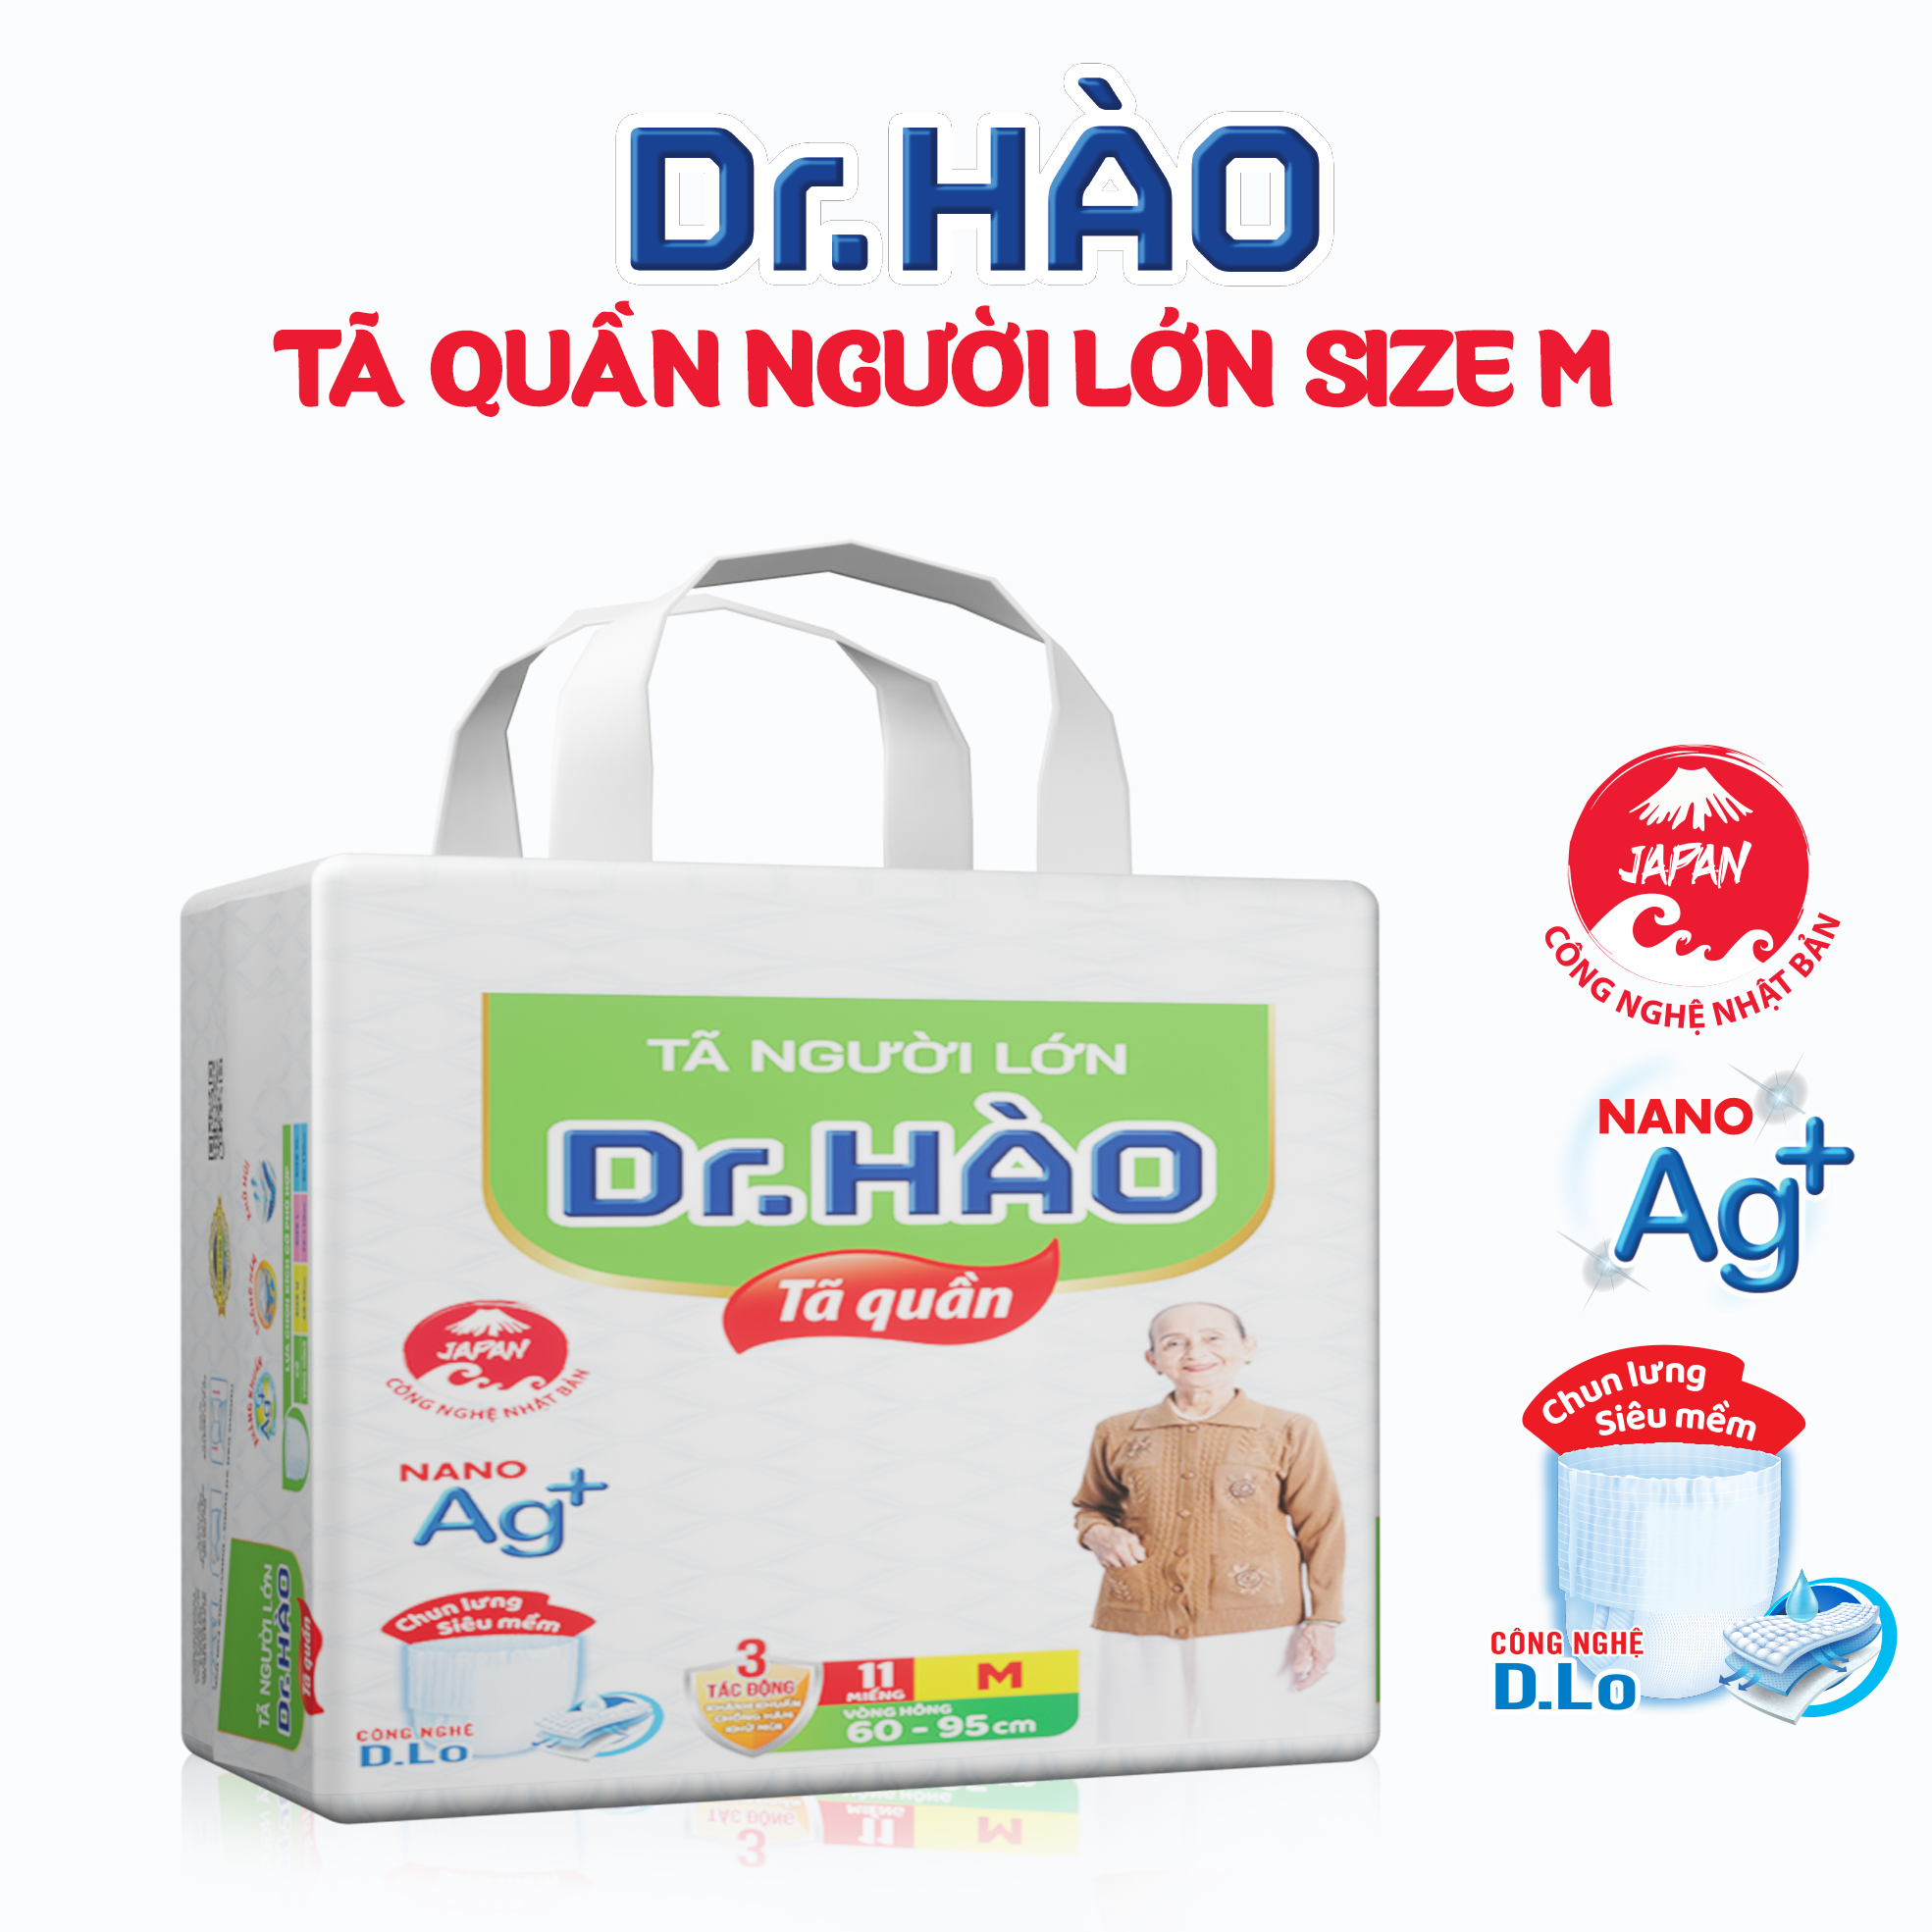 Tã quần người lớn Dr.Hào size M bỉm quần cho người già bỉm cho người bệnh